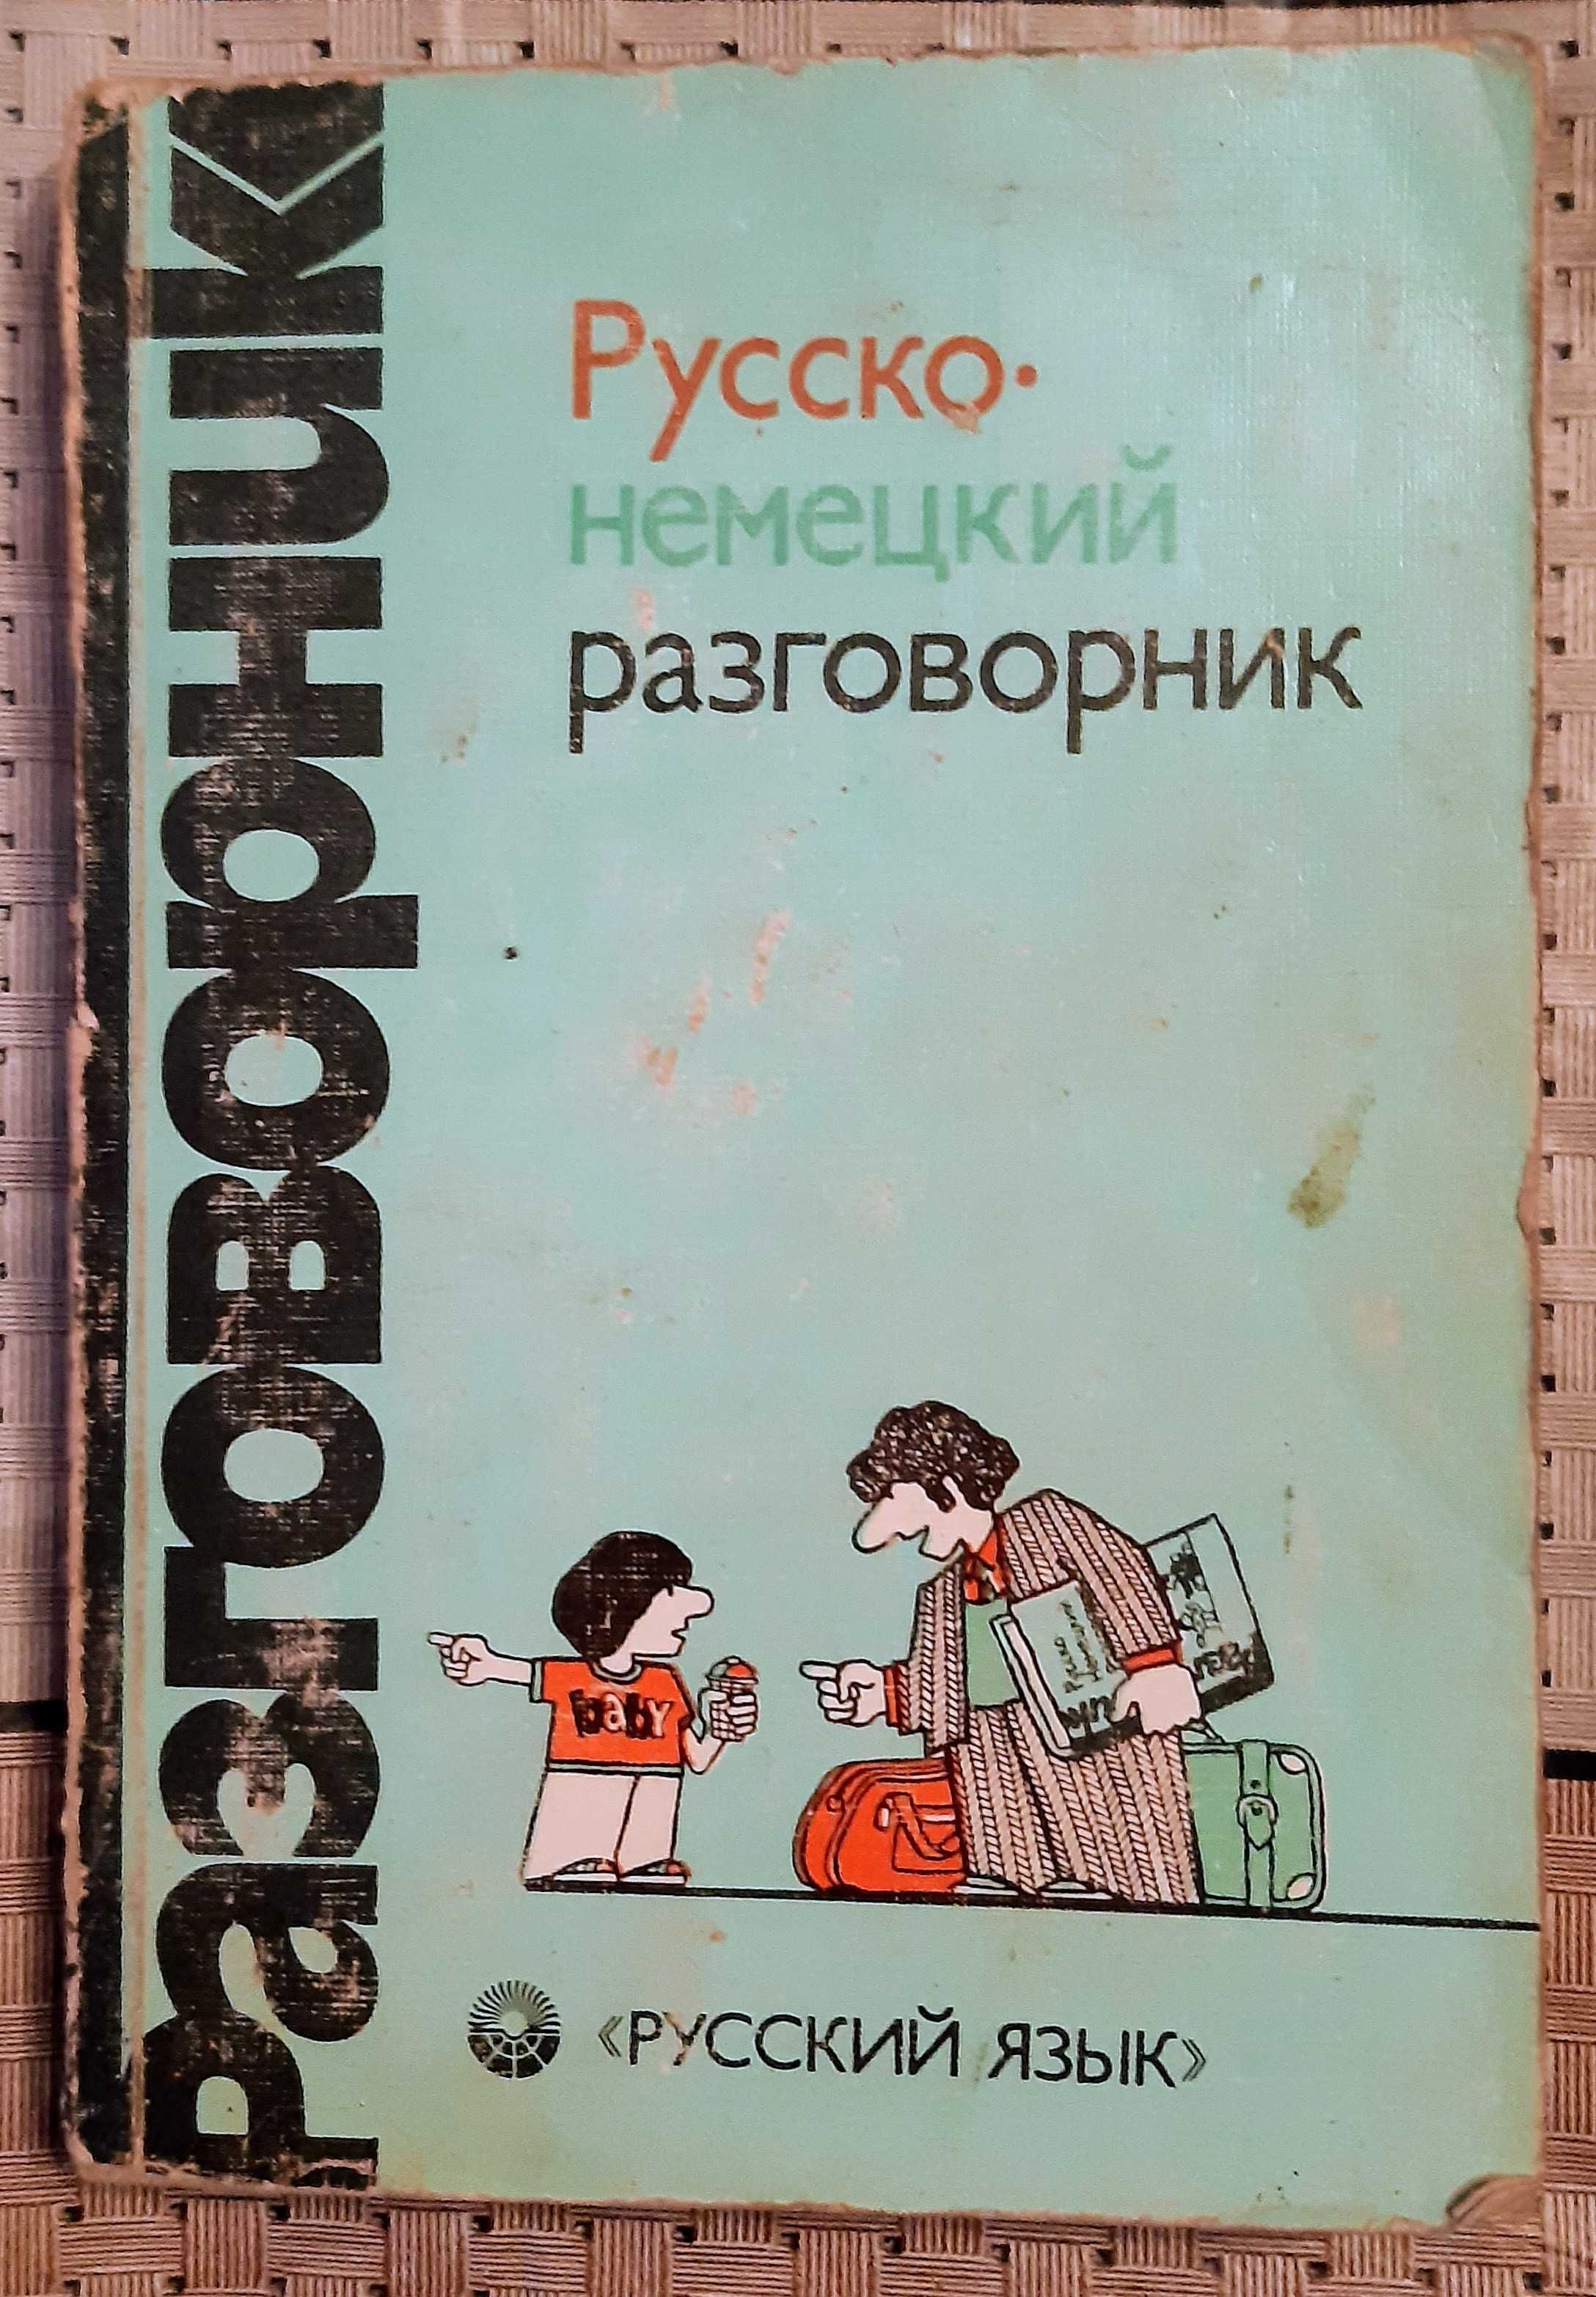 Русско-немецкий разговорник, 1985 г., 
Сорокин Г. А., Попов М. Н.